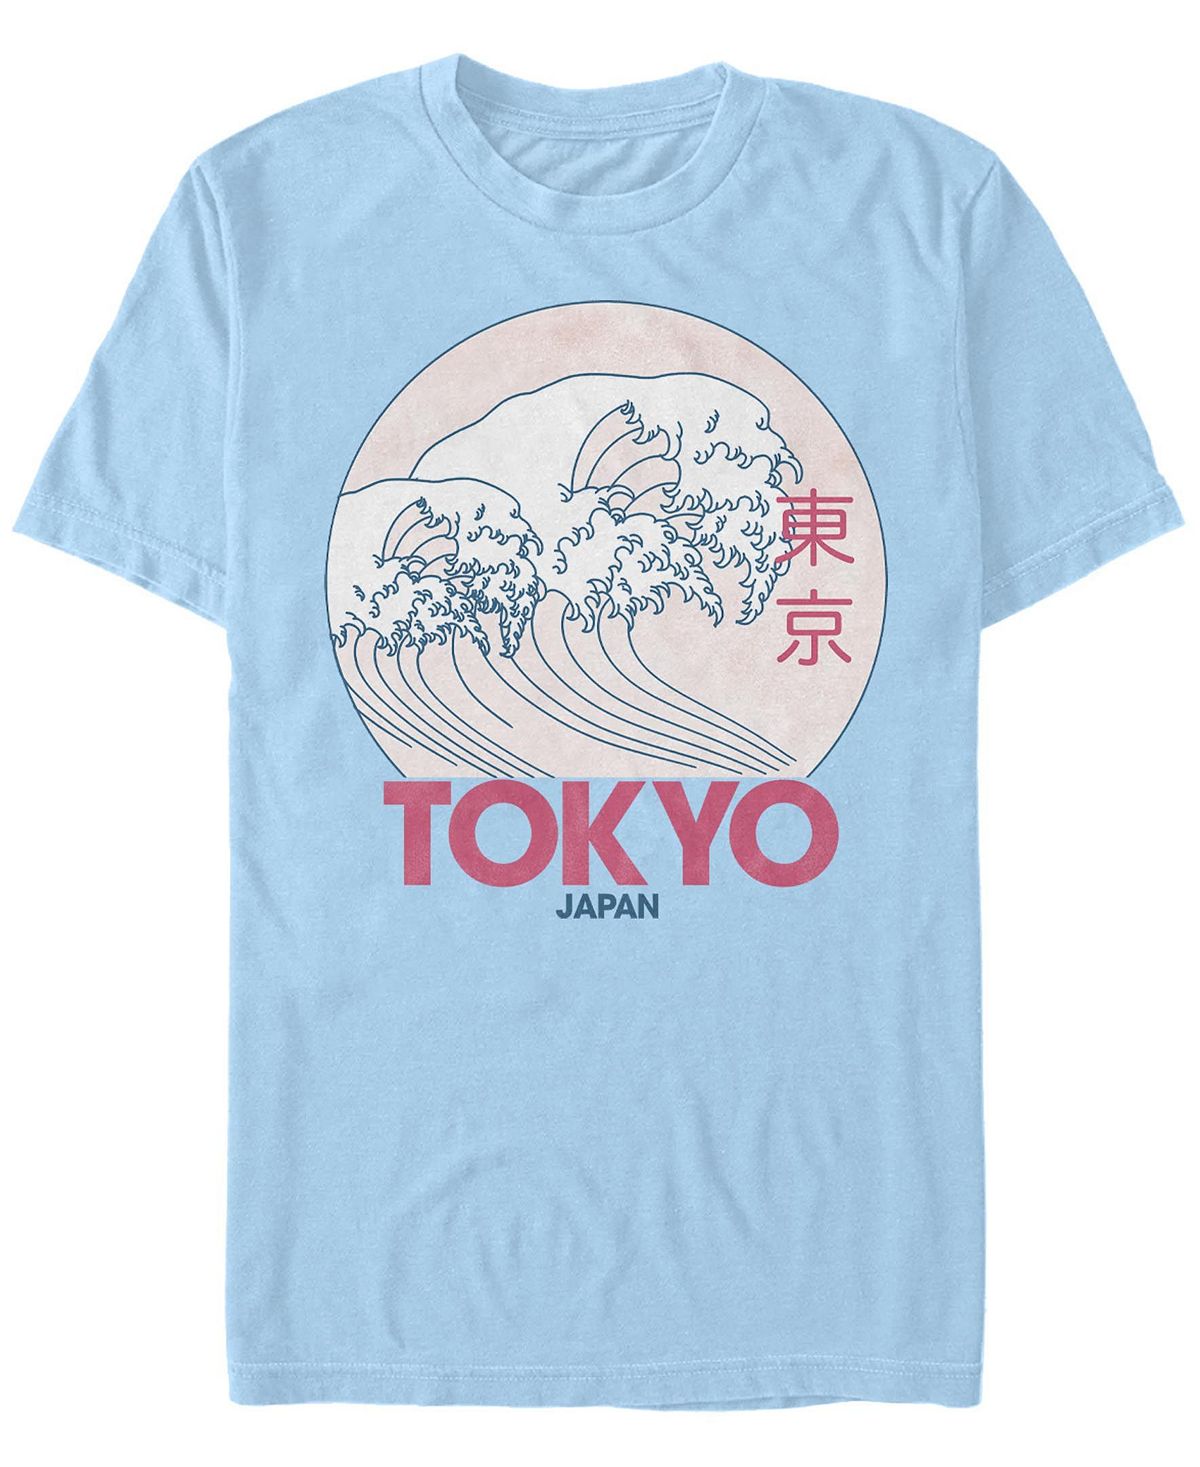 Мужская футболка с круглым вырезом с короткими рукавами в винтажном стиле tokyo Fifth Sun, светло-синий мужская футболка cuphead с короткими рукавами и круглым профилем в винтажном стиле cuphead fifth sun синий